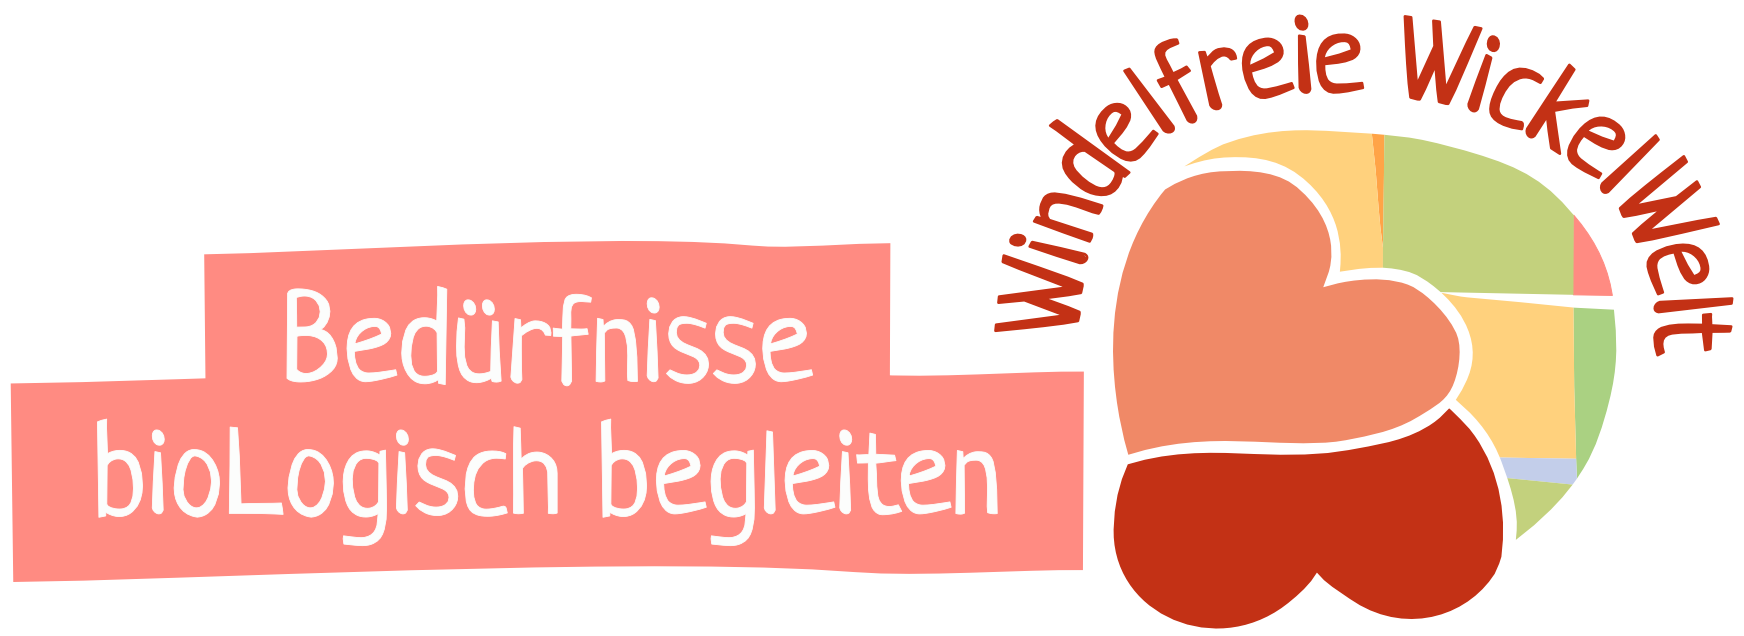 Windelfreie WickelWelt